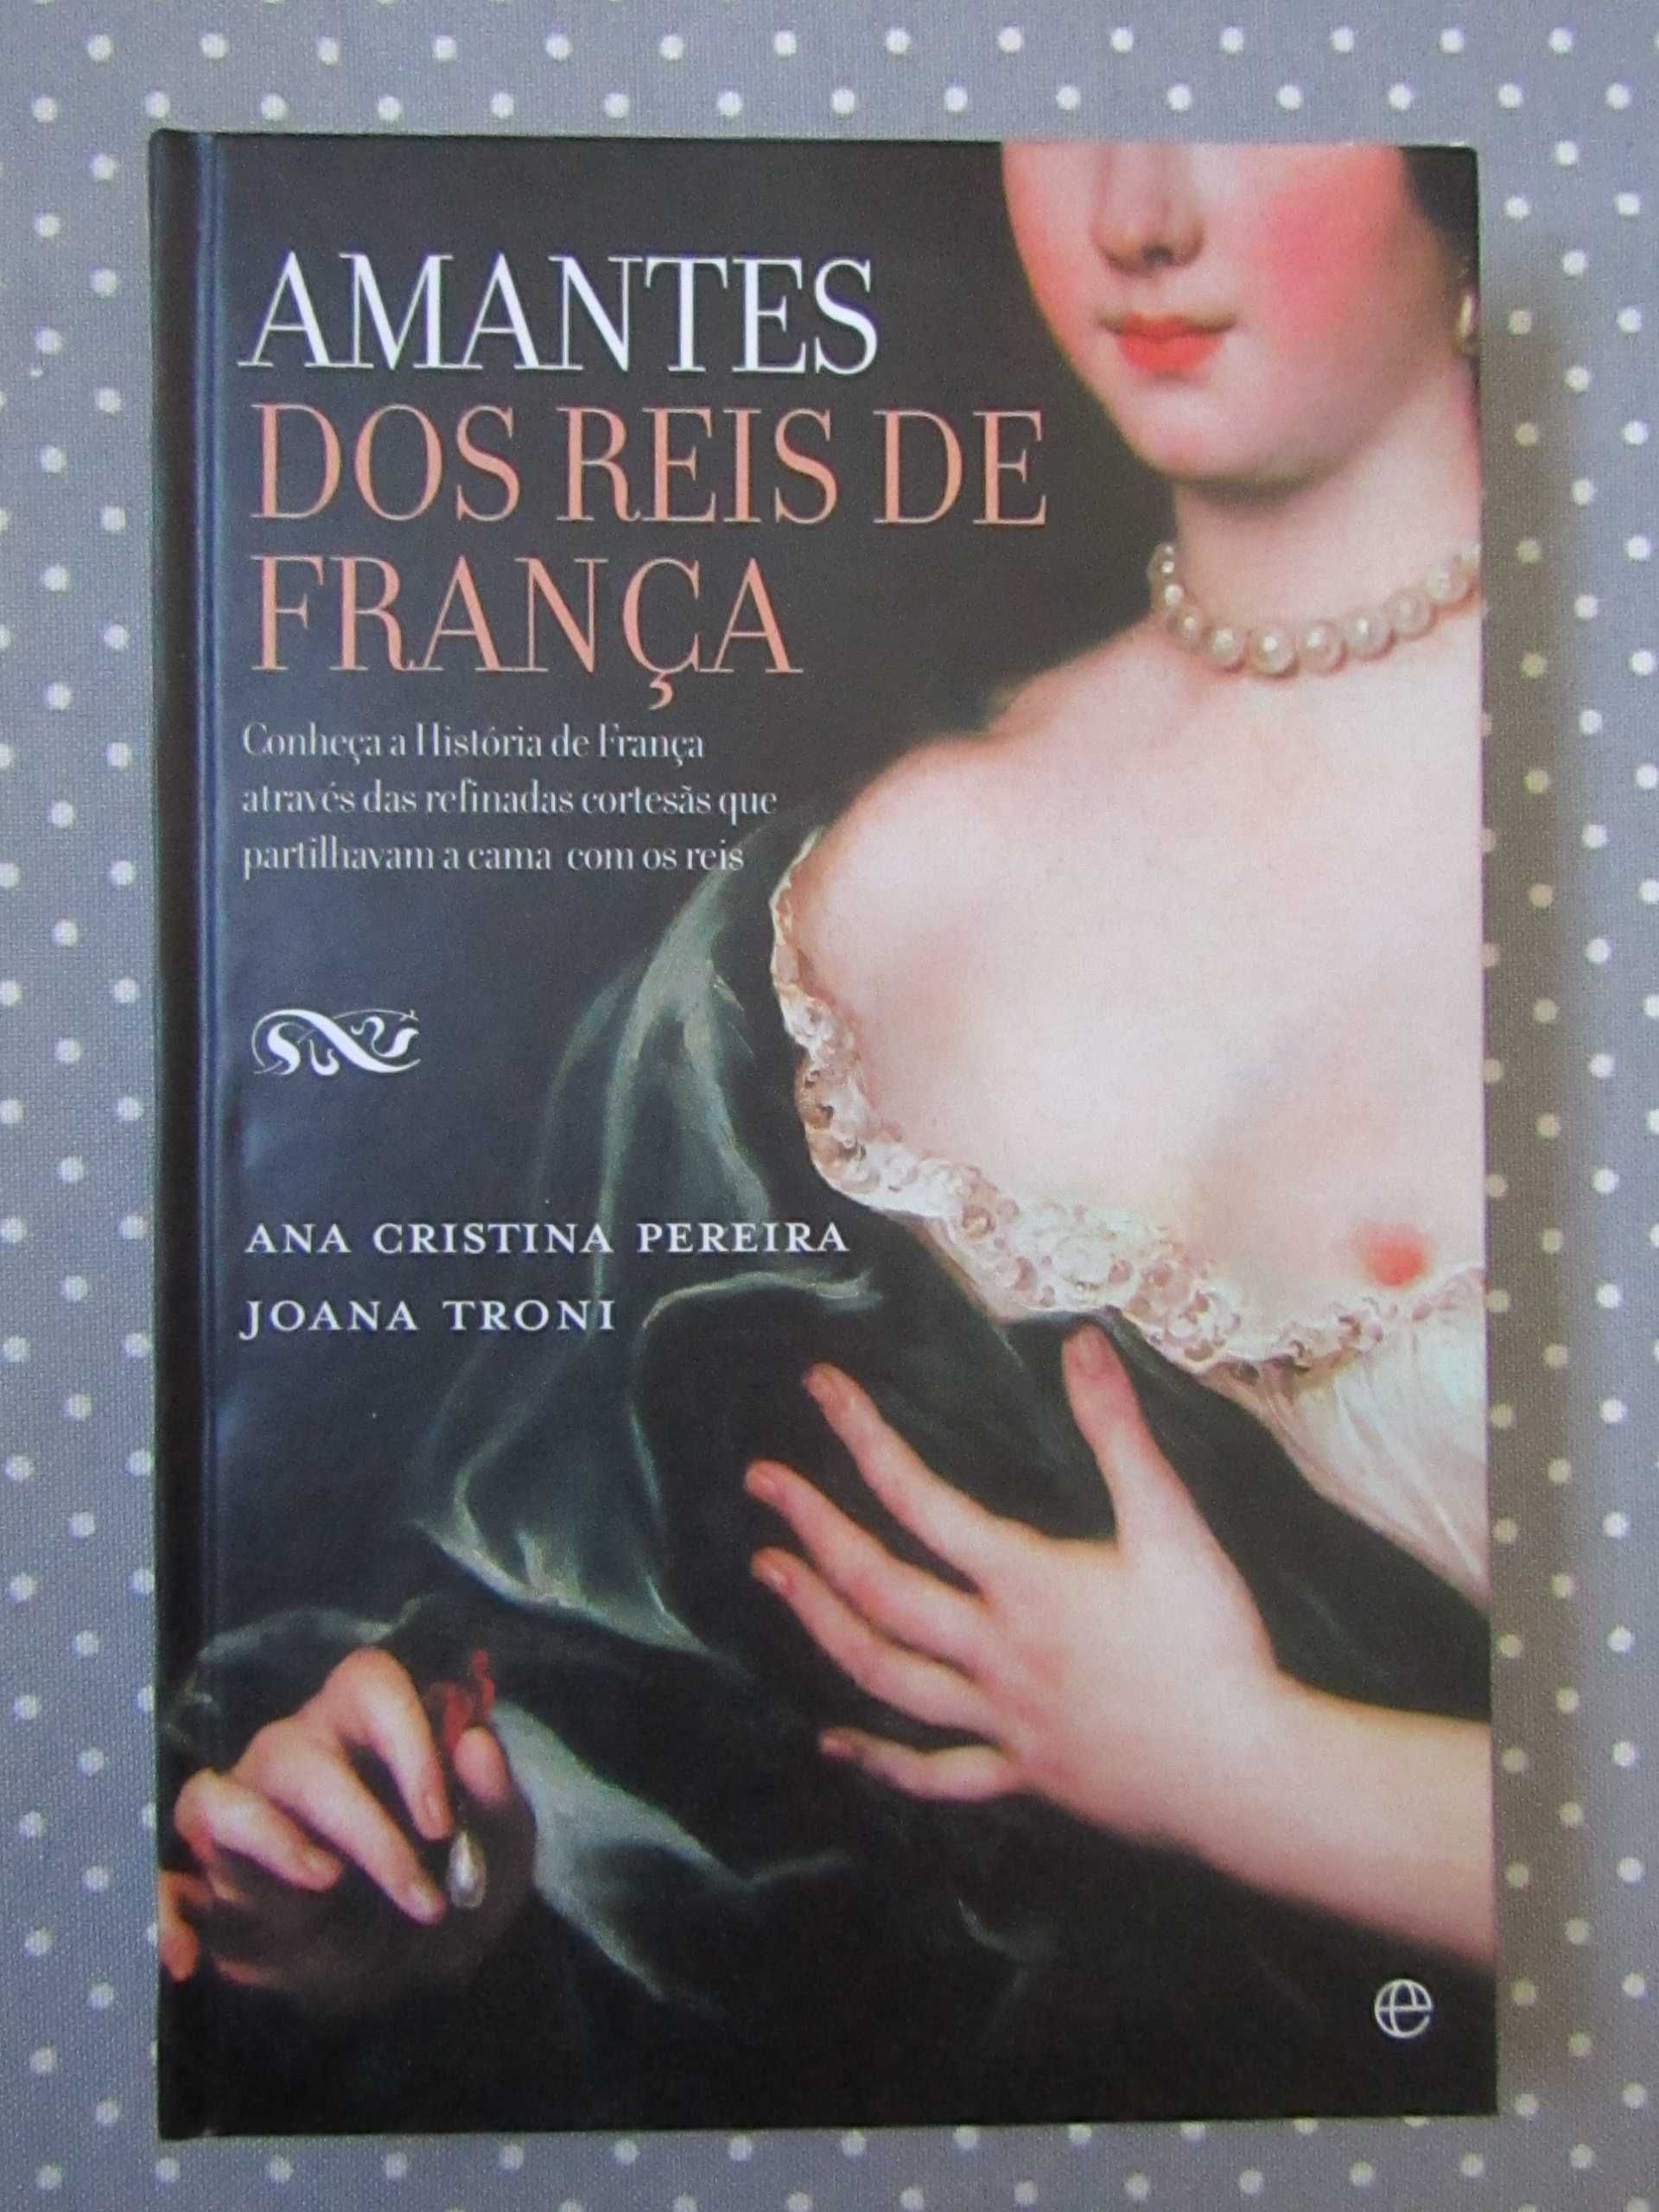 Livro Amantes dos Reis de França Novo Portes Incluídos